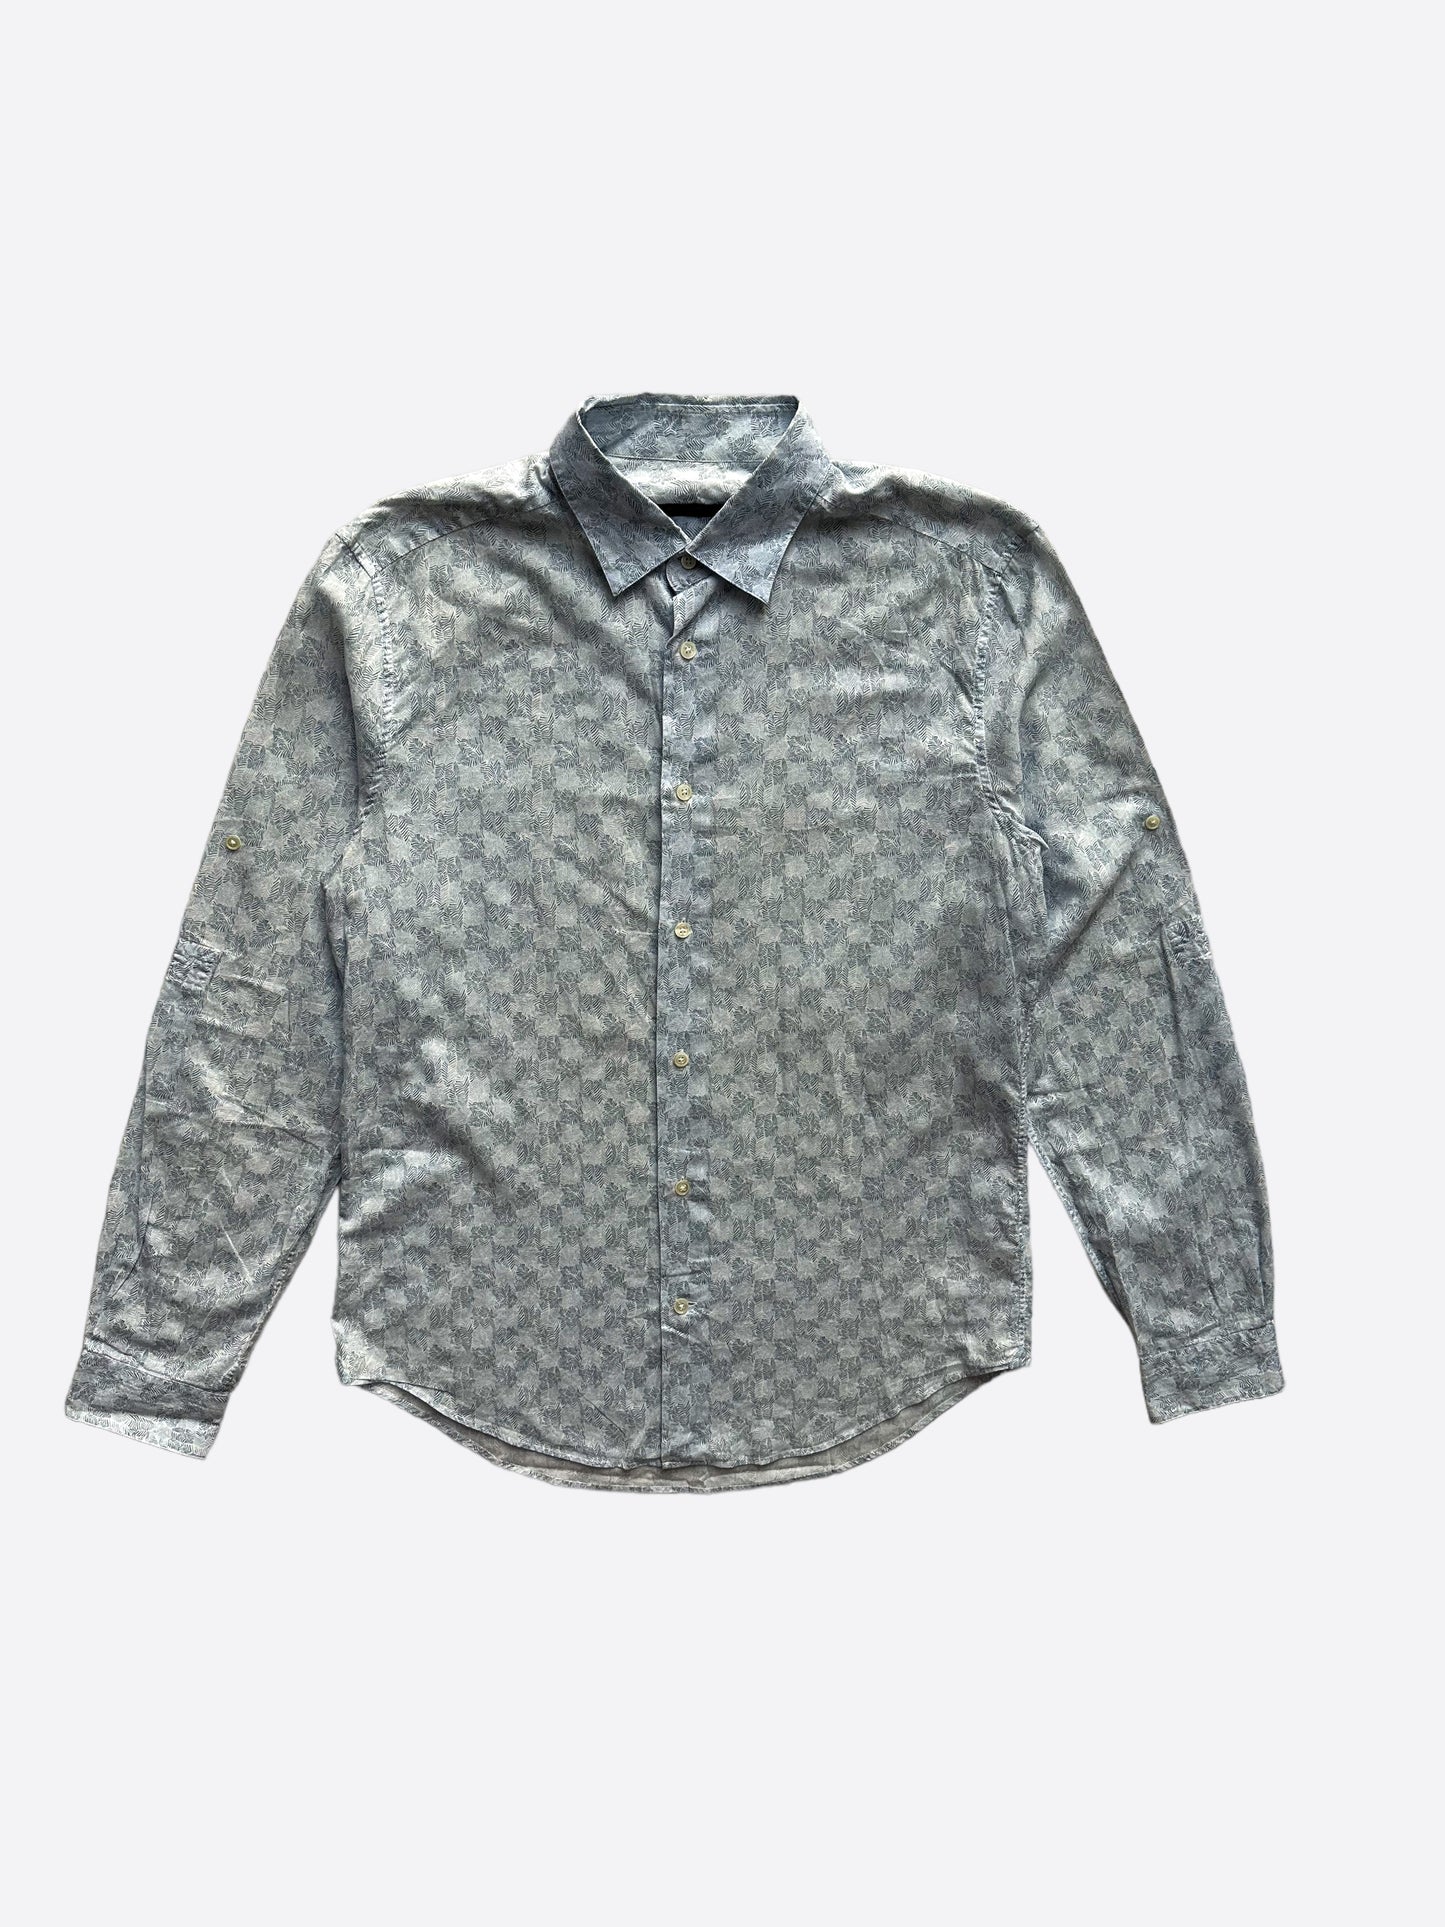 LOUIS VUITTON Size L Light Blue Leaf Print Cotton Button Up Long Sleeve  Shirt